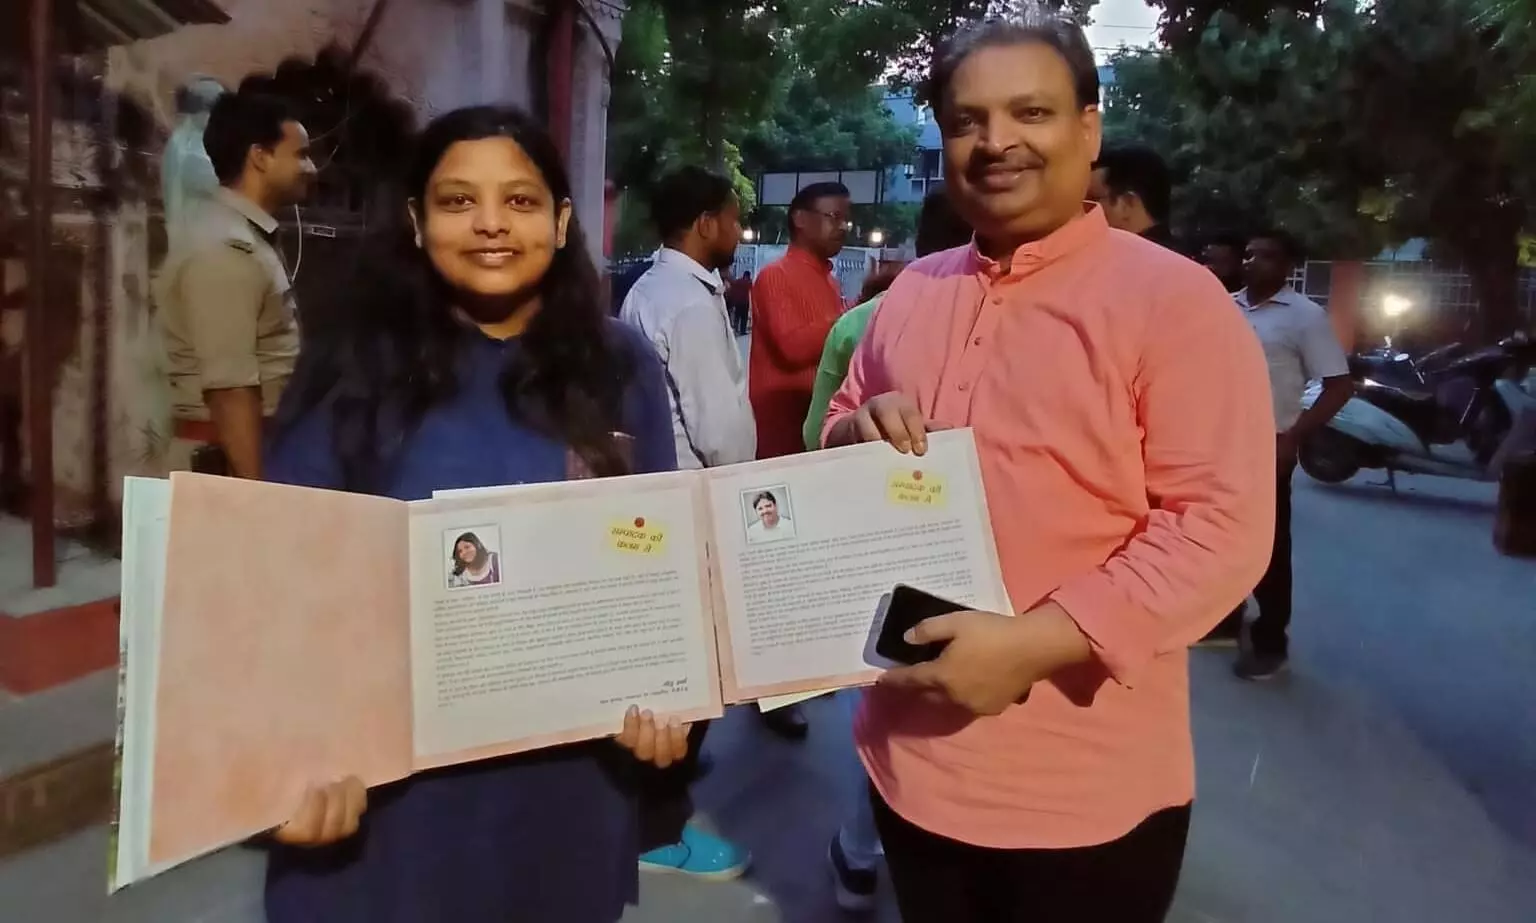 प्रो गोविन्द जी पांडेय के निर्देशन में शोध कर रही छात्रा नीलू शर्मा की फिल्म  Know Cancer  को राष्ट्रीय विज्ञान फिल्म प्रतियोगिता में अवार्ड केटेगरी में दिखाने के लिए चयन किया गया